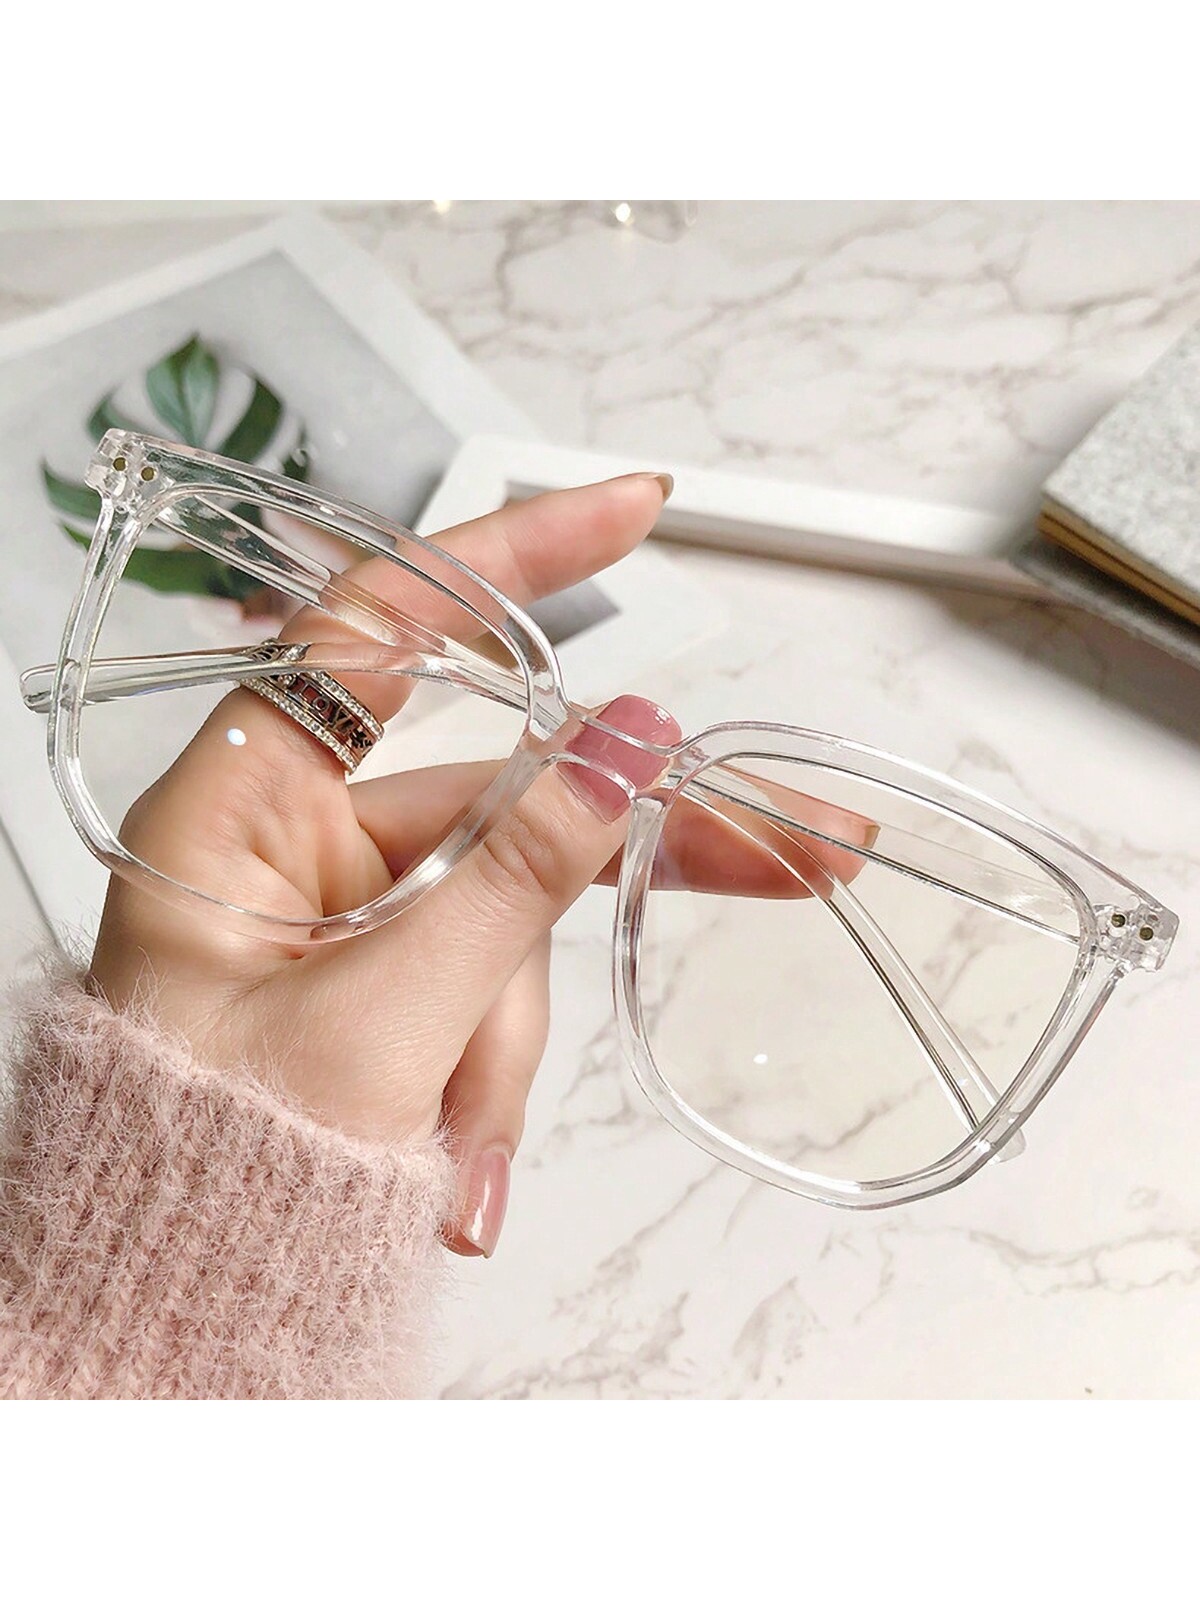 1шт Прозрачные очки в квадратной оправе с заклепками, уличный стиль классические прямоугольные очки с заклепками